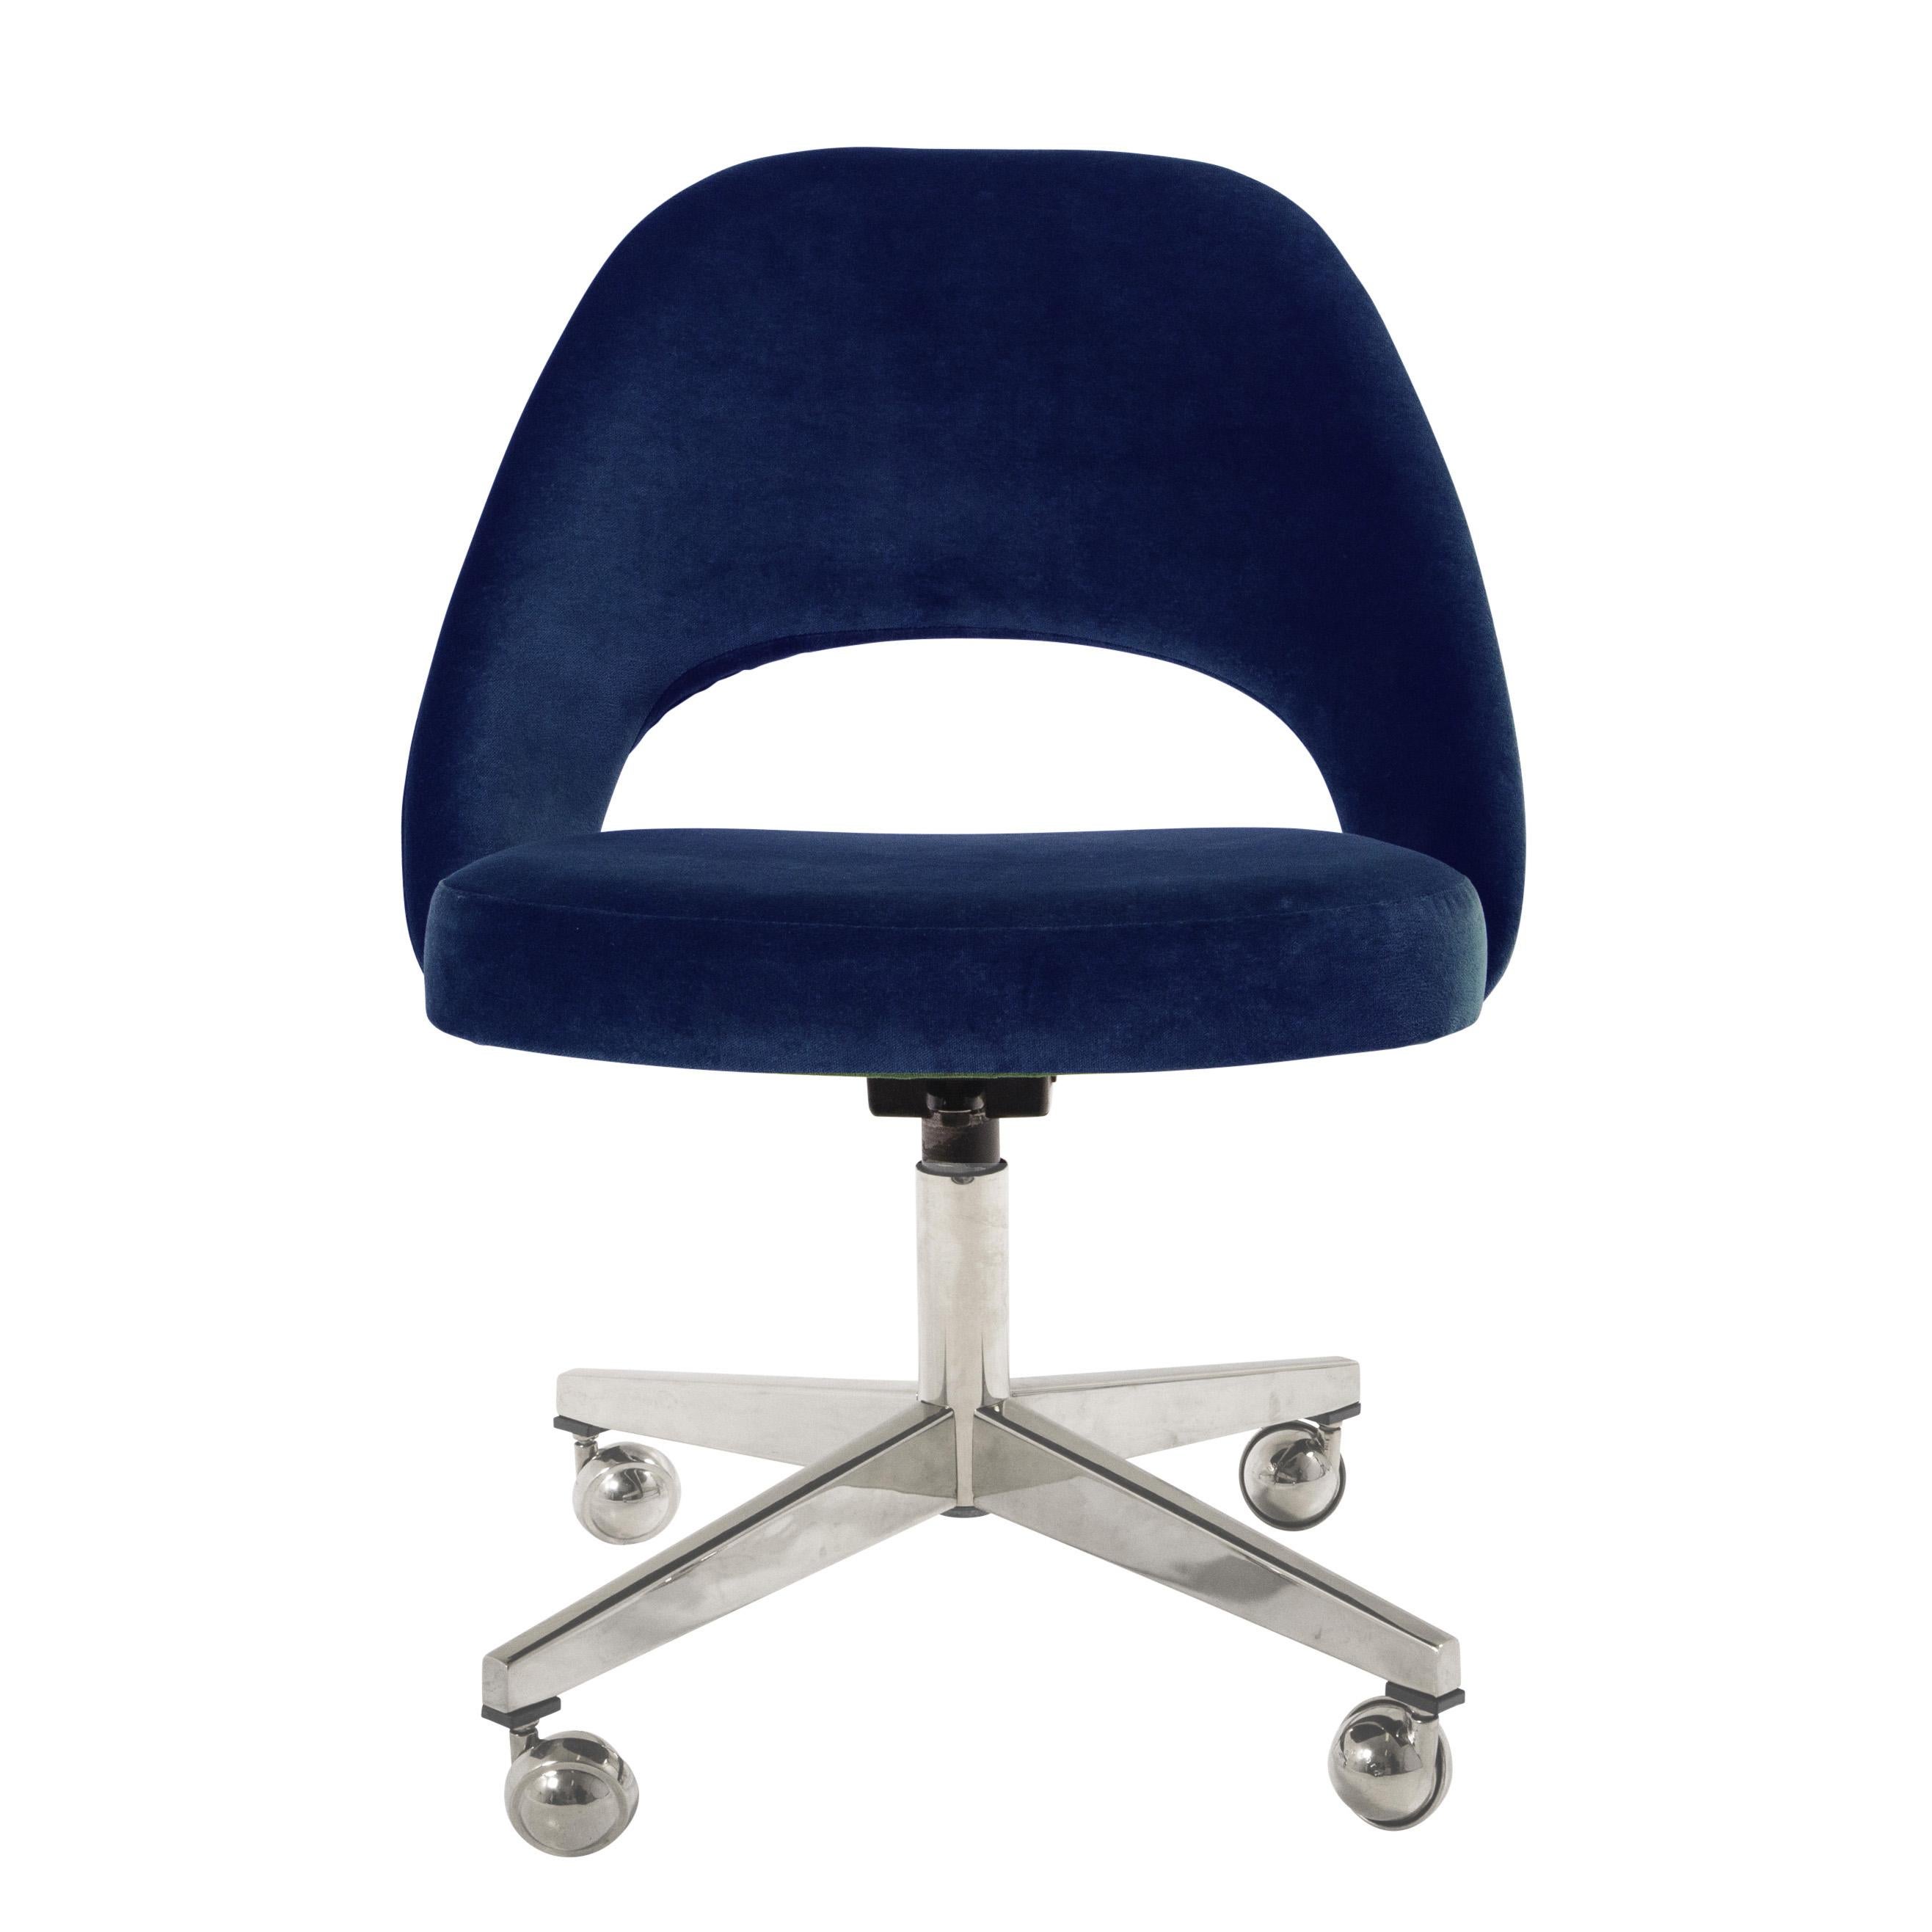 Depuis des années, nous restaurons des fauteuils de direction Saarinen dans tous les tissus possibles et imaginables, dans notre propre atelier. Nous avons restauré ces chaises vintage en utilisant un élégant velours italien de couleur bleu royal.